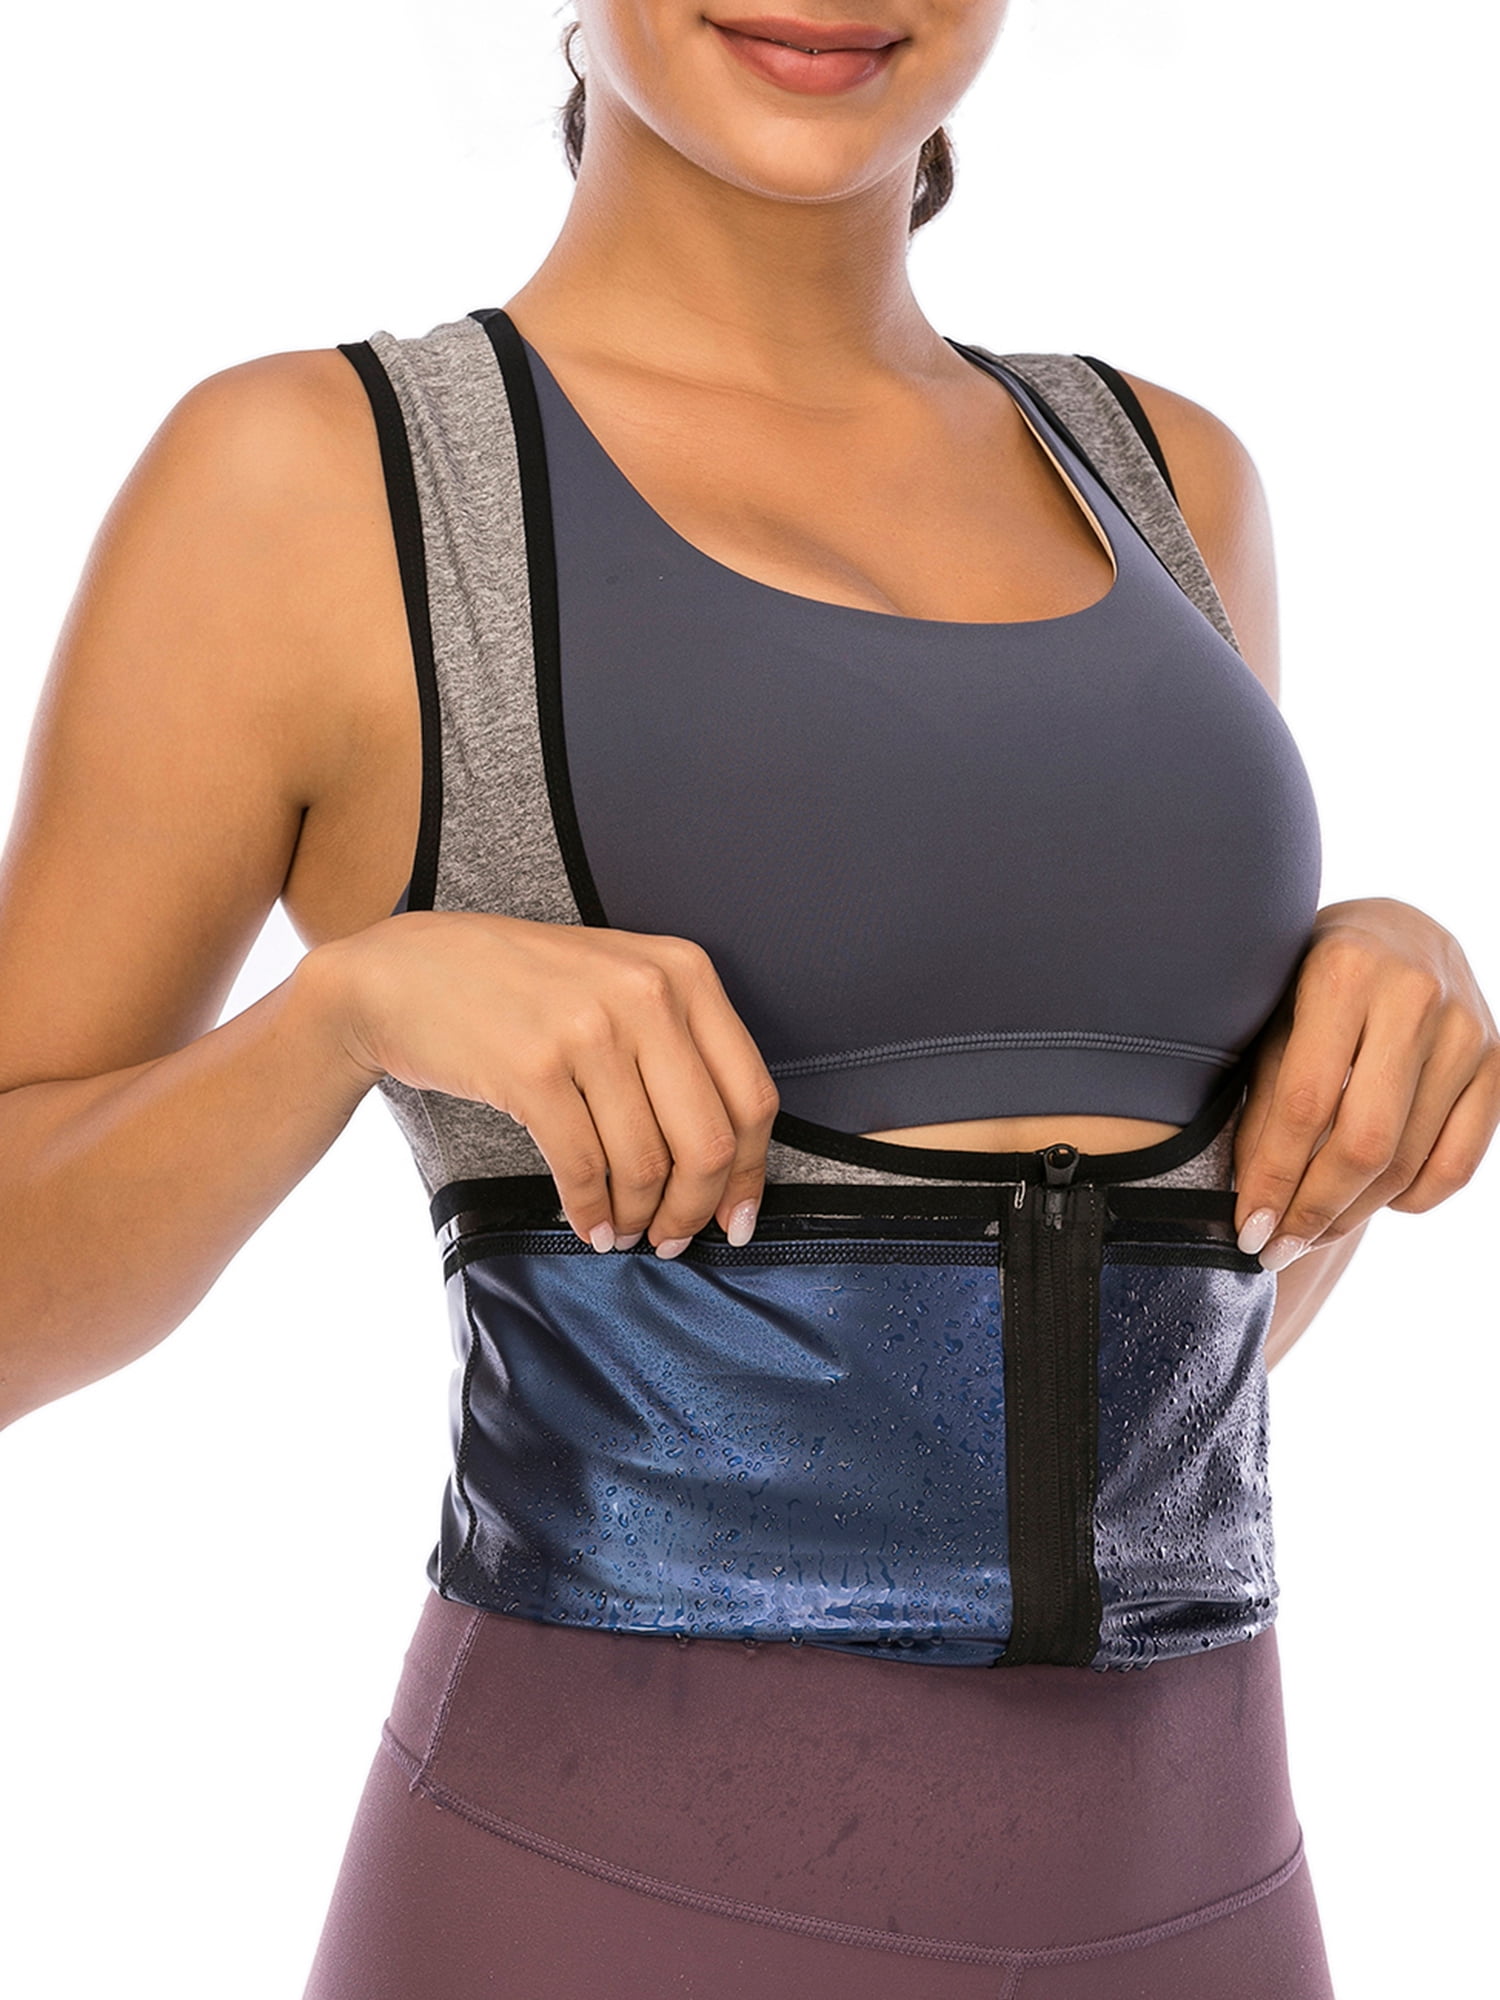 Lelinta Sweat Vest for Women Neoprene Sauna Suit Tank Top Vest with Adjustable Shaper Trainer Belt